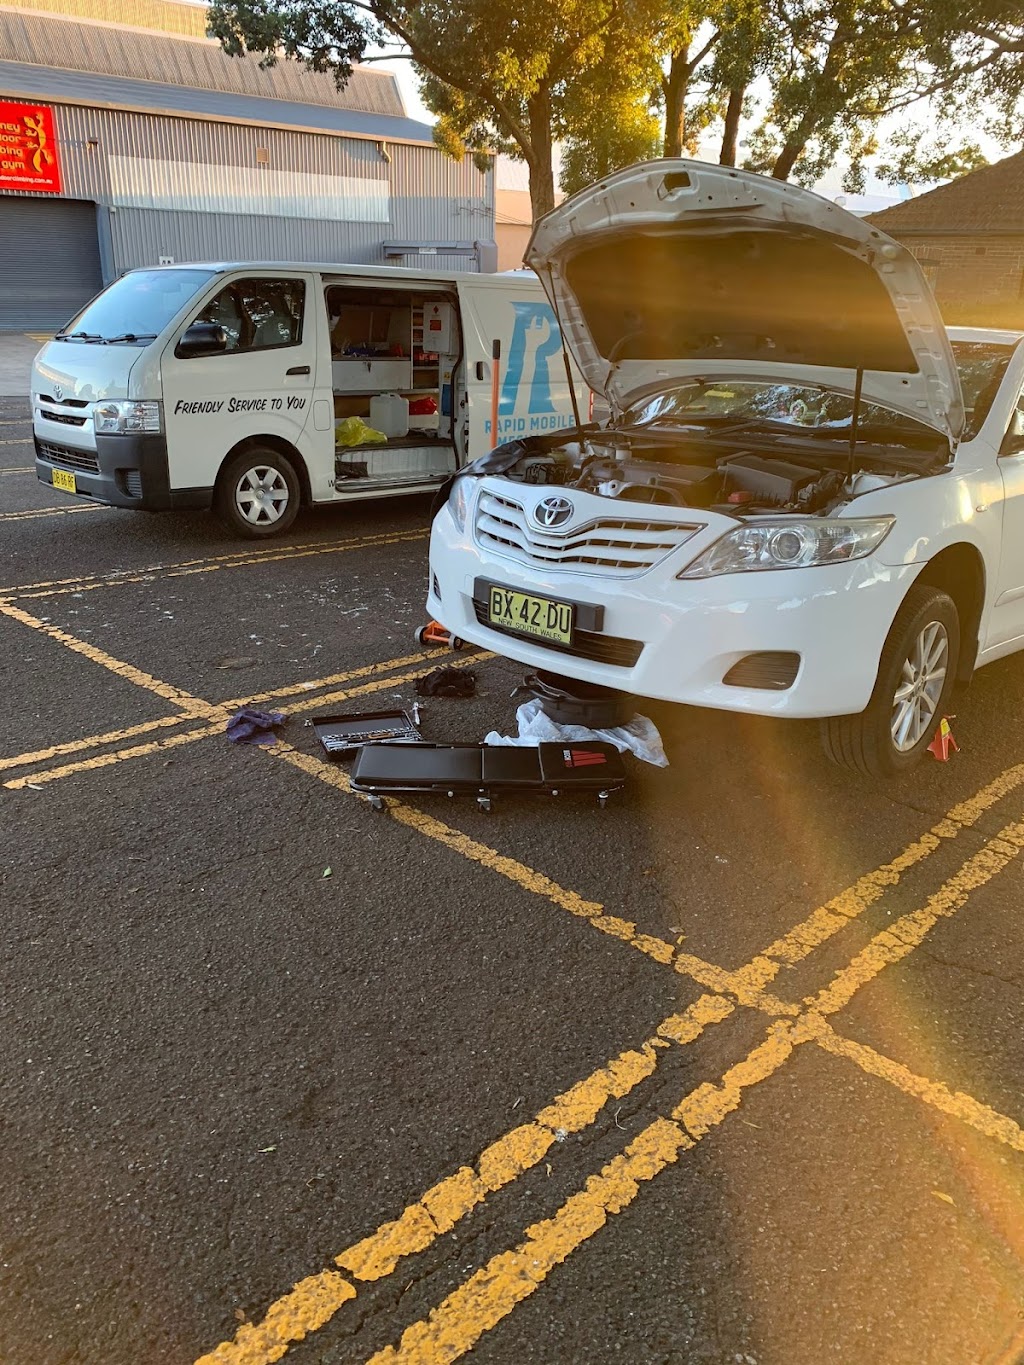 Rapid Mobile Mechanic | car repair | 45 Primrose Ave, Rosebery NSW 2018, Australia | 0413638500 OR +61 413 638 500